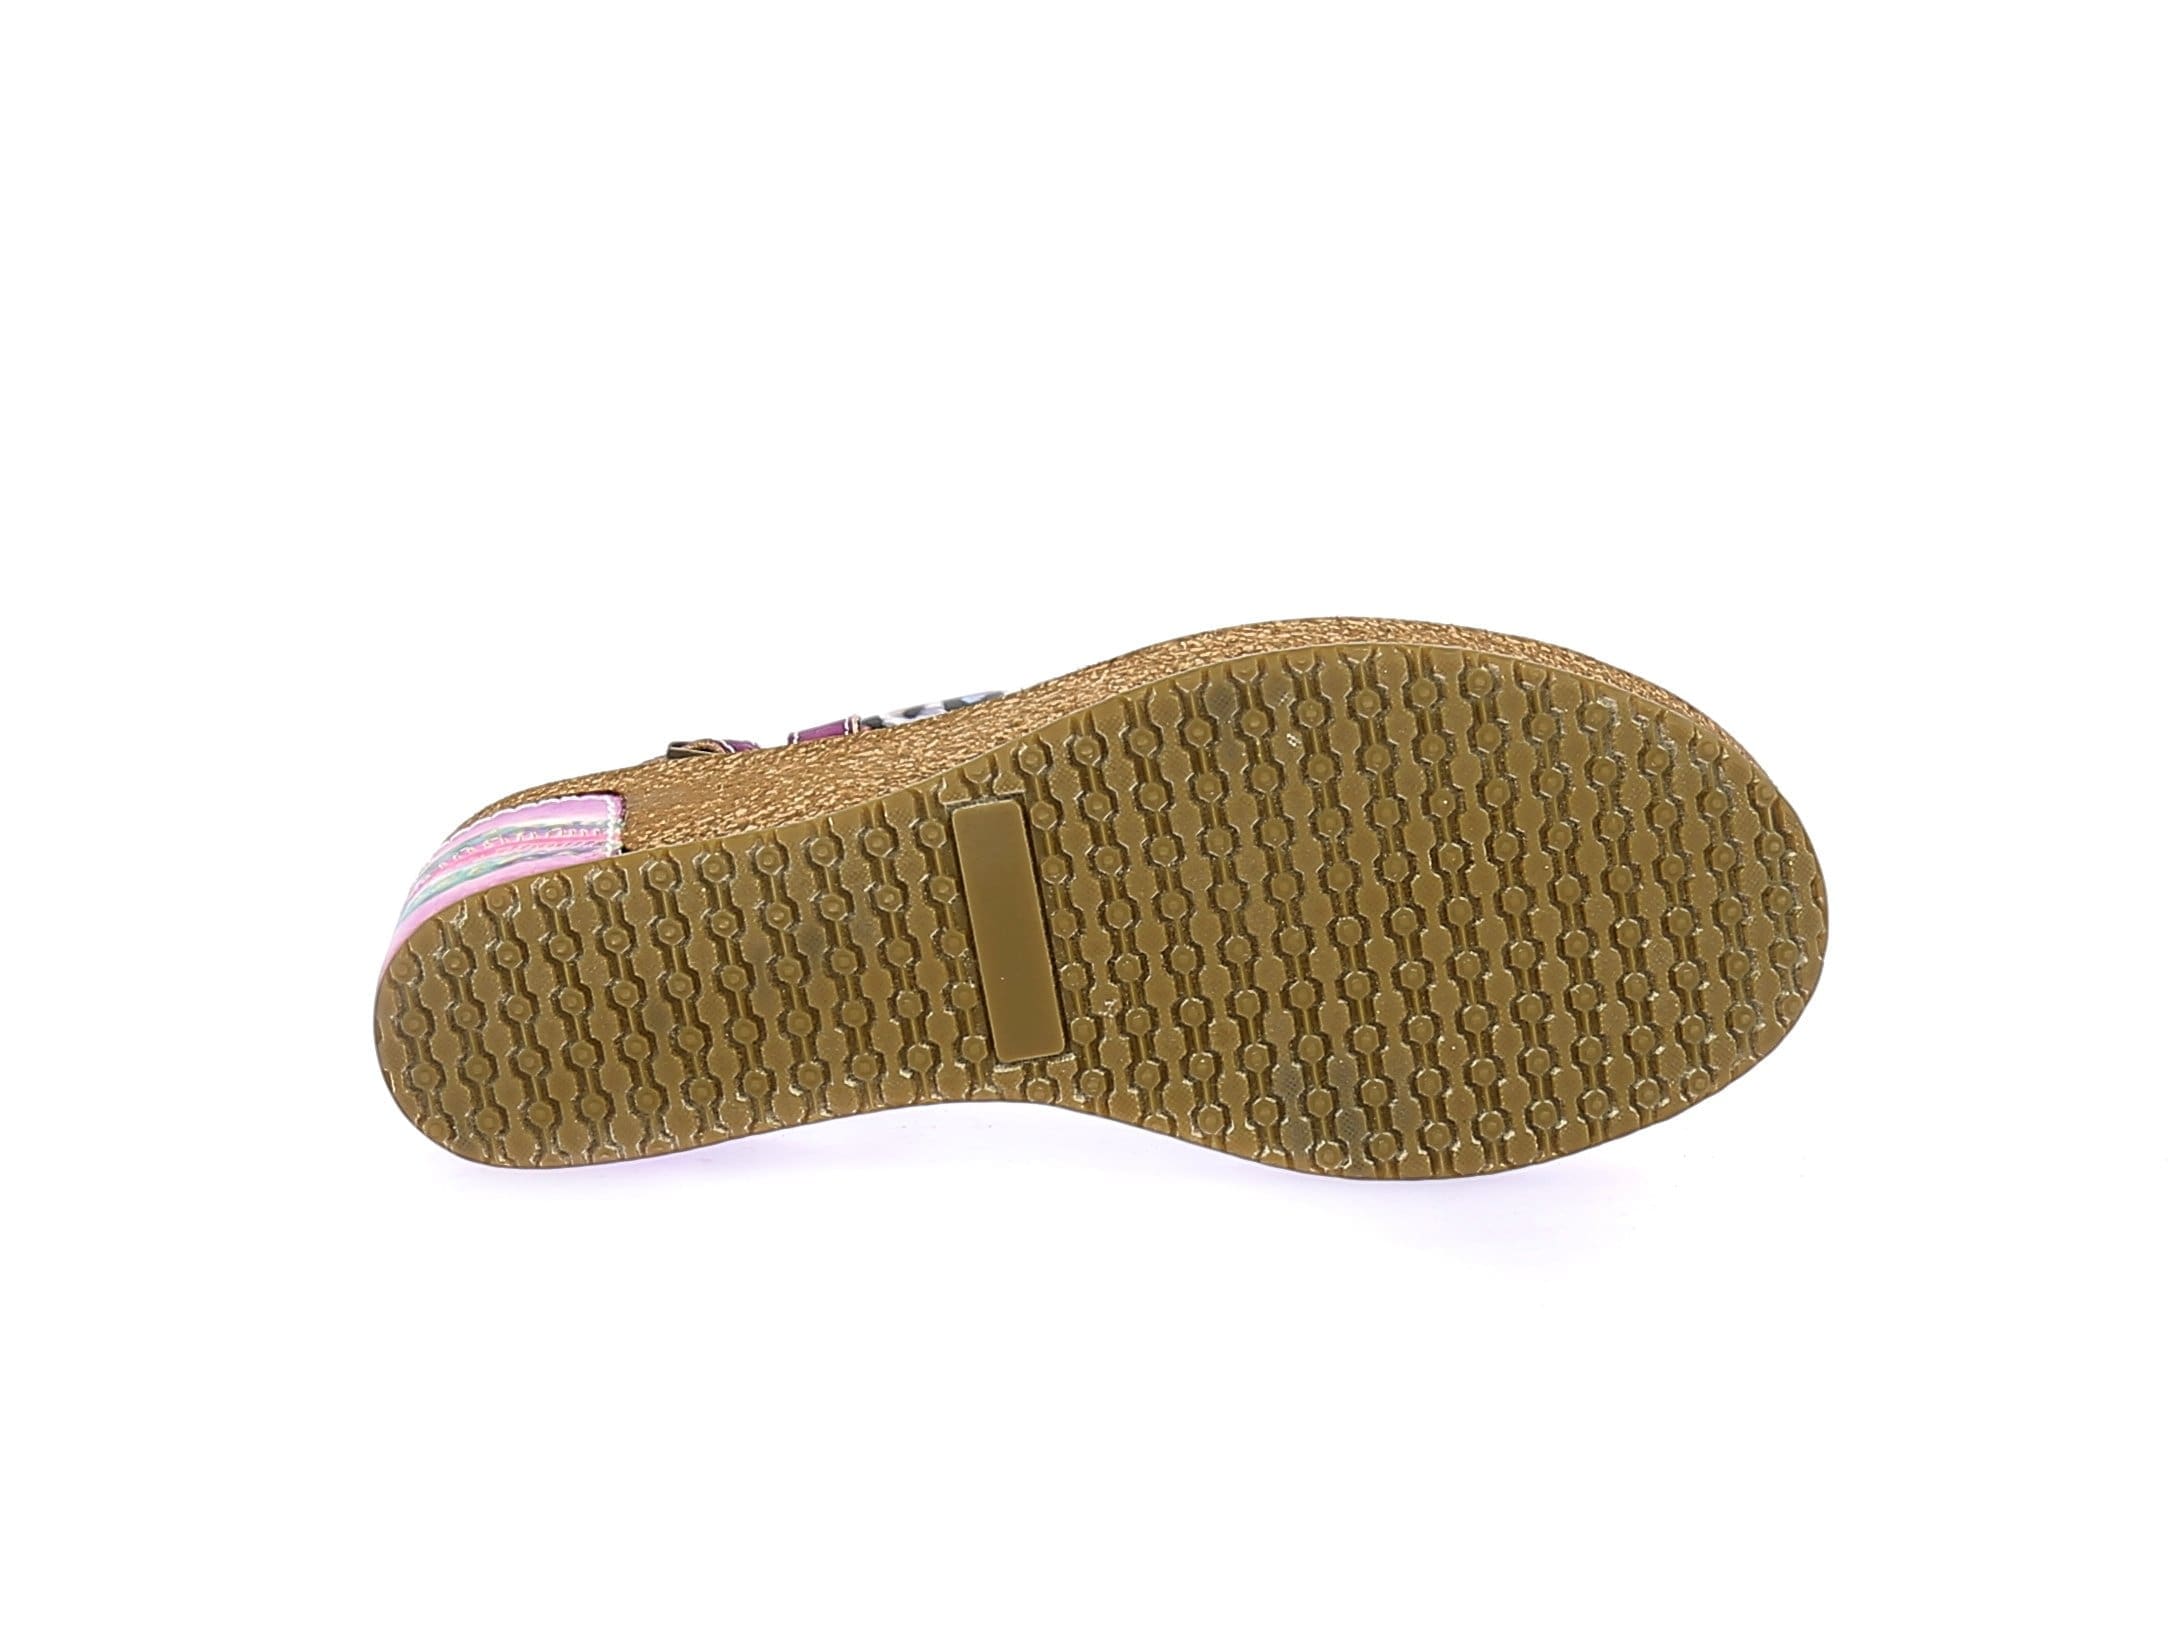 HACKEO 11 Scarpe - Sandalo